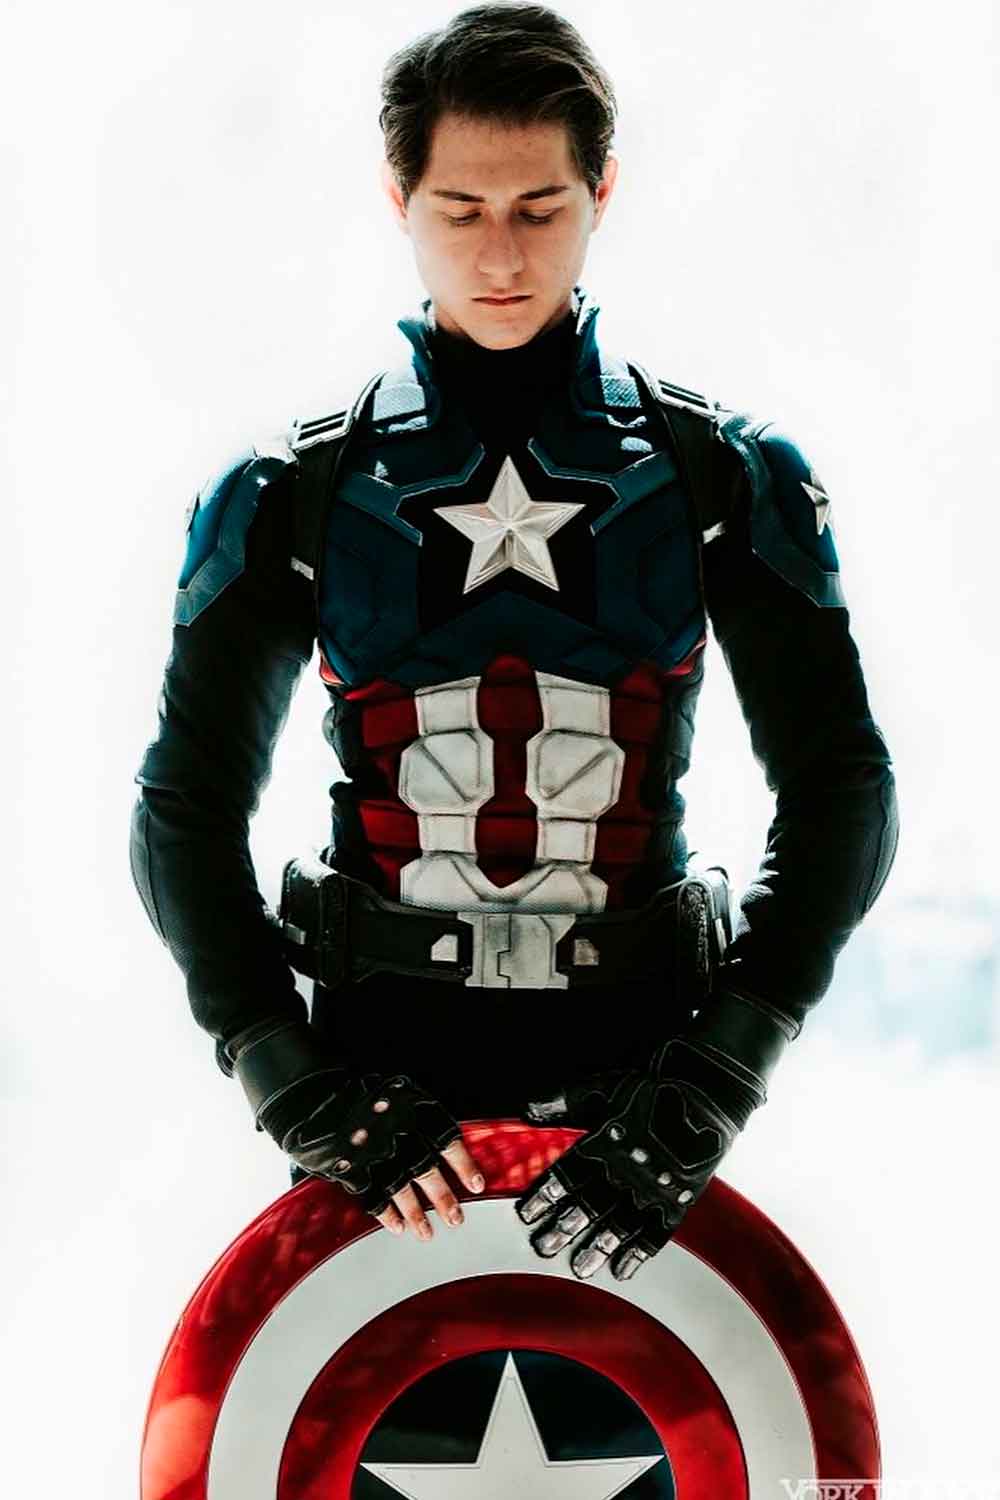 Captain America #menshalloweencostumes #haloweencostumeideasmen #halloweencostumes